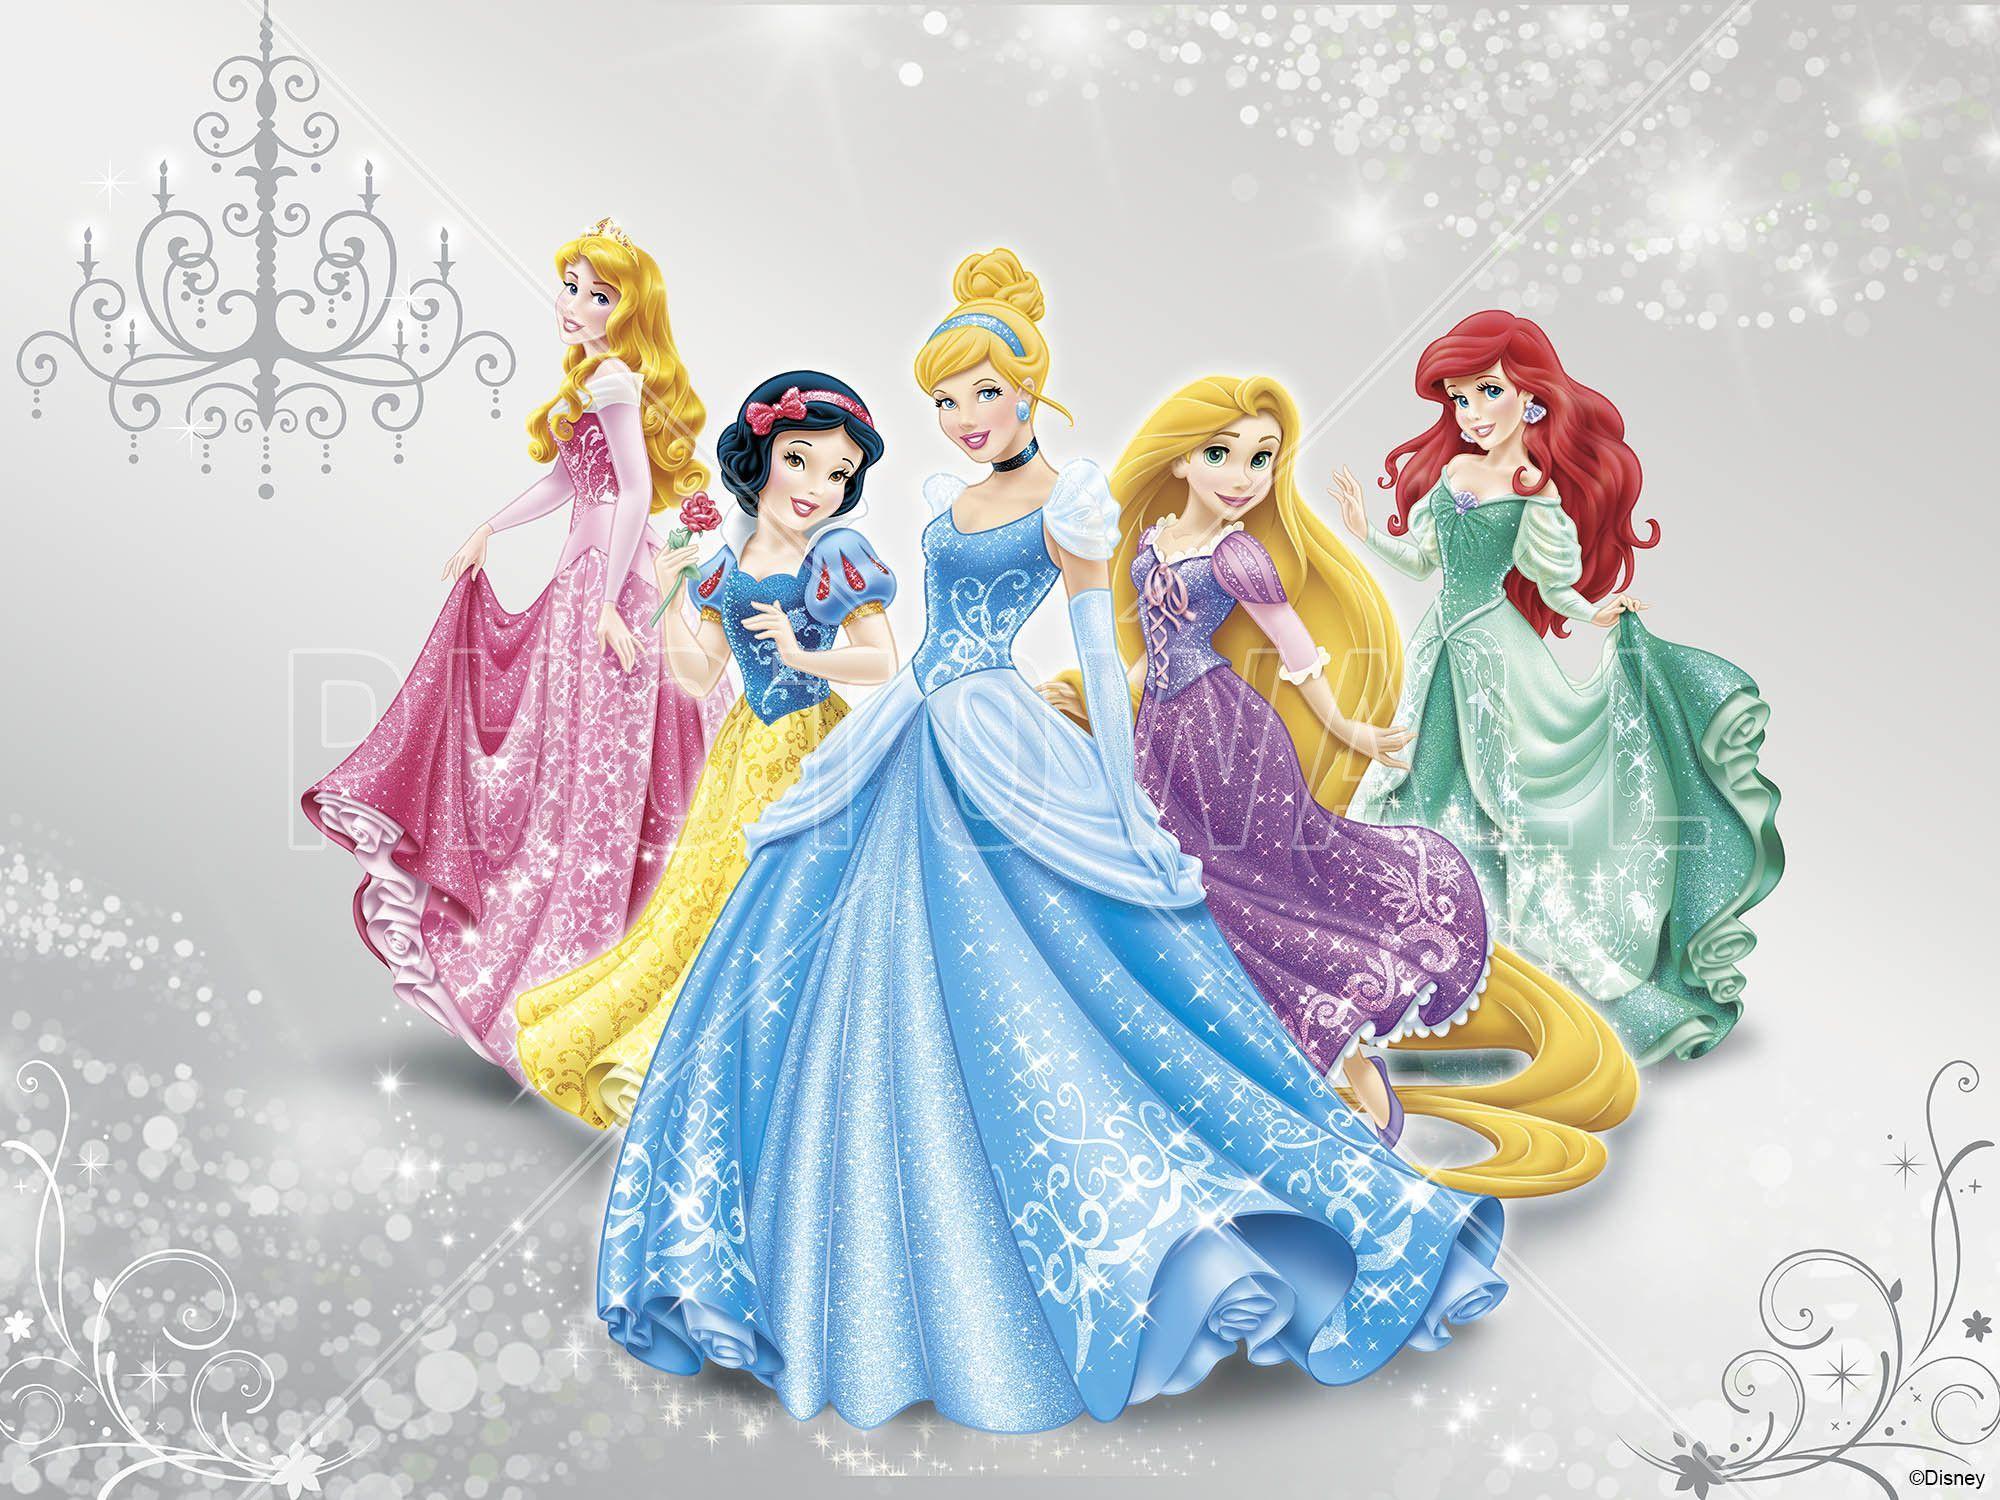 Сайт принцессы. Disney Princess принцесса Дисней. Принцессы Диснея картинки. Обои с принцессами. Пять принцесс.